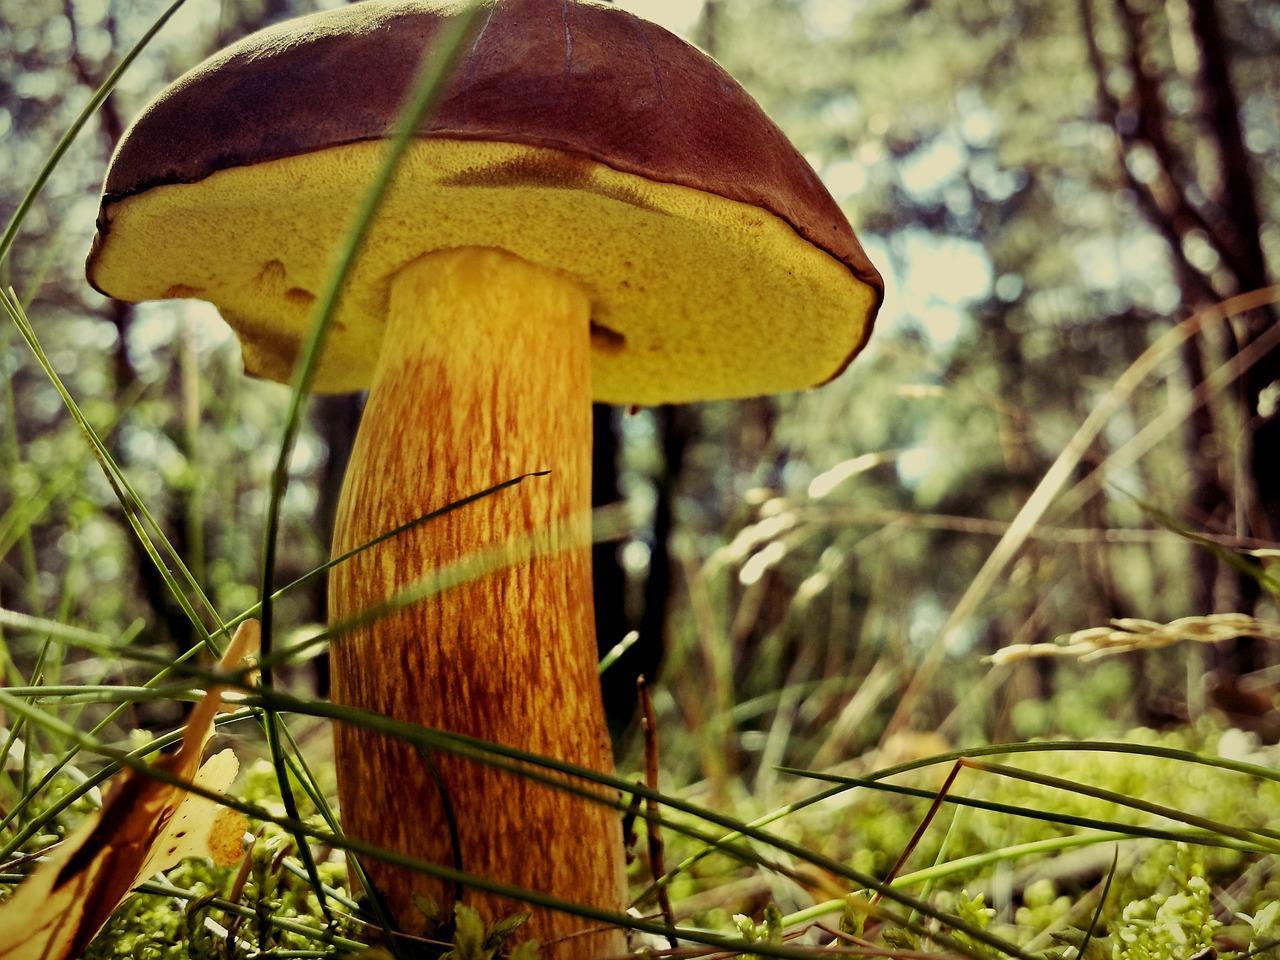 How to cook mushroom mushroom